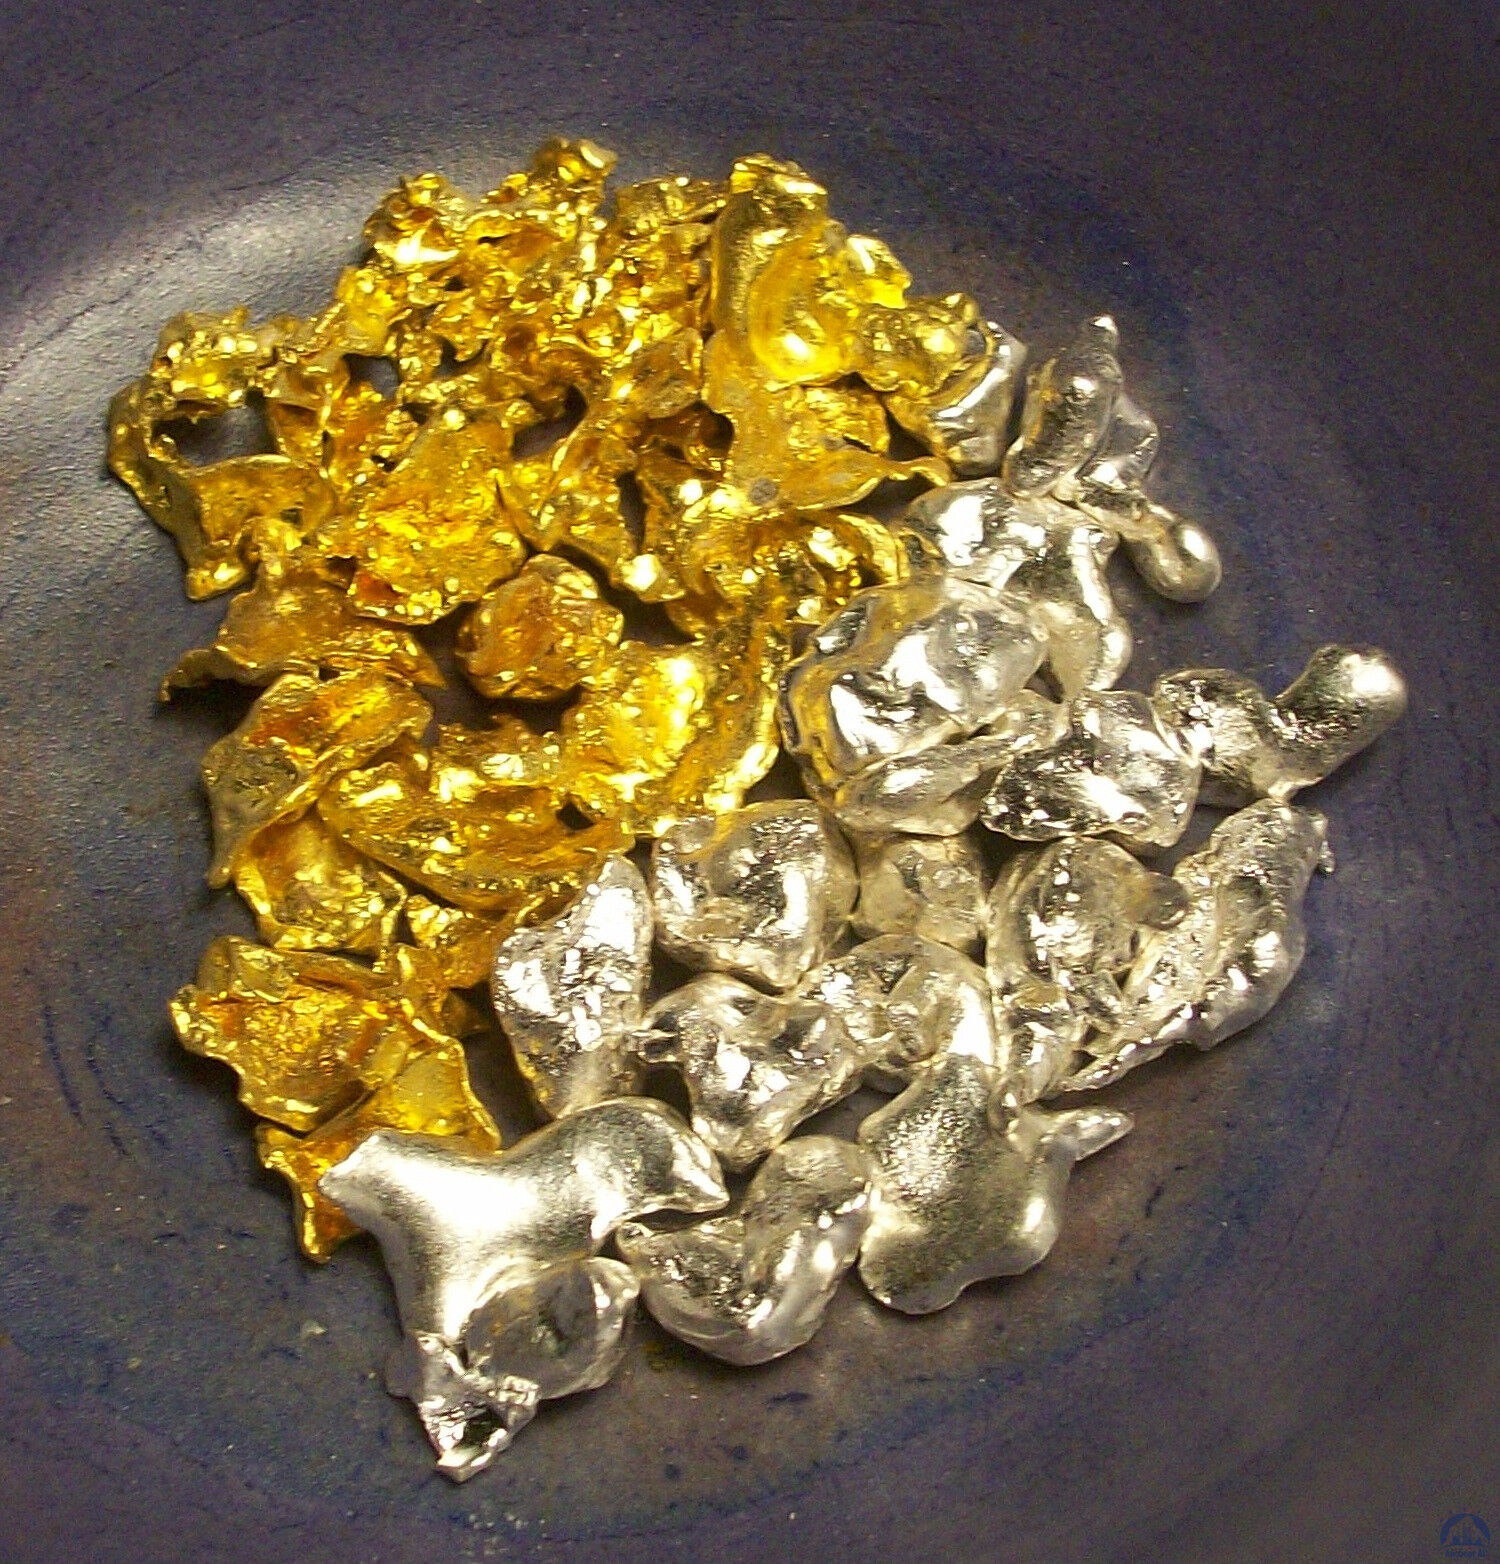 3 благородных металла. Драгоценные металлы. Золотые сплавы. Золото и серебро. Сплав золота и платины.